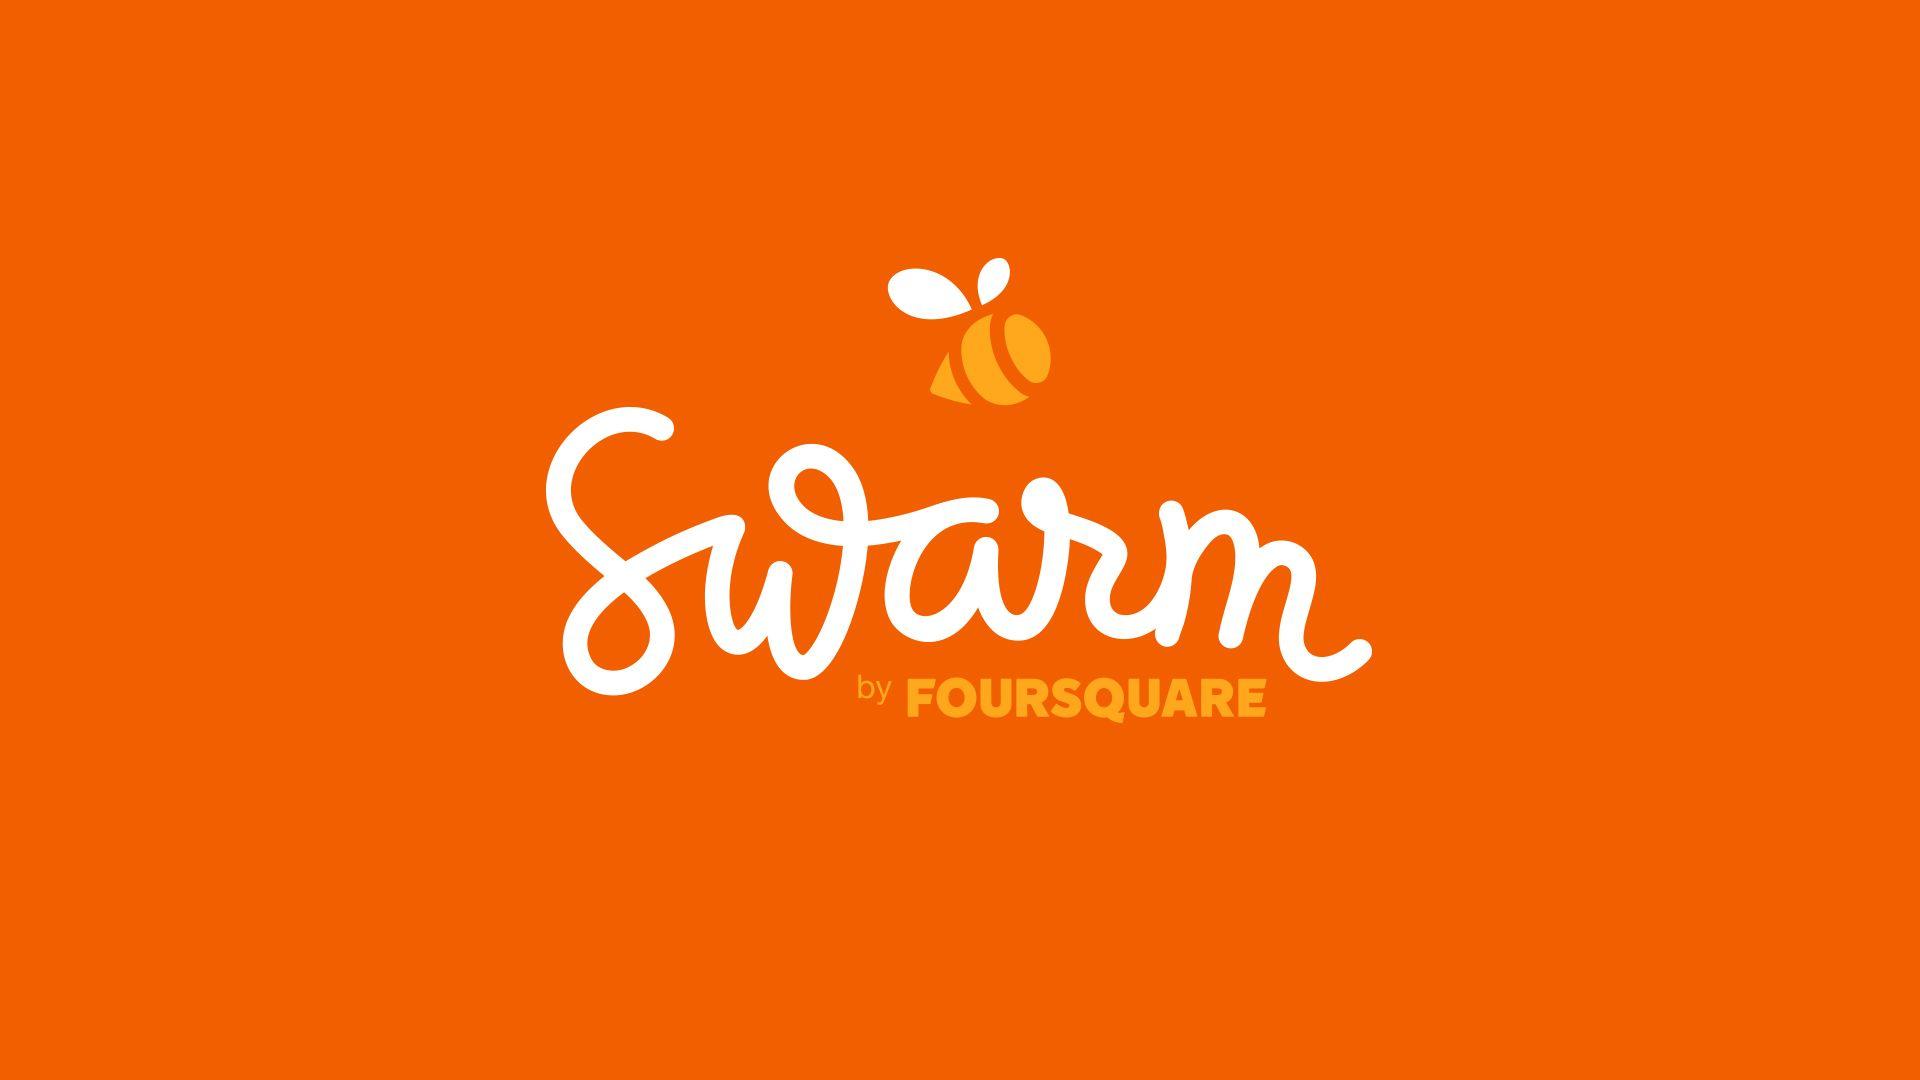 Swarm Logo - Swarm